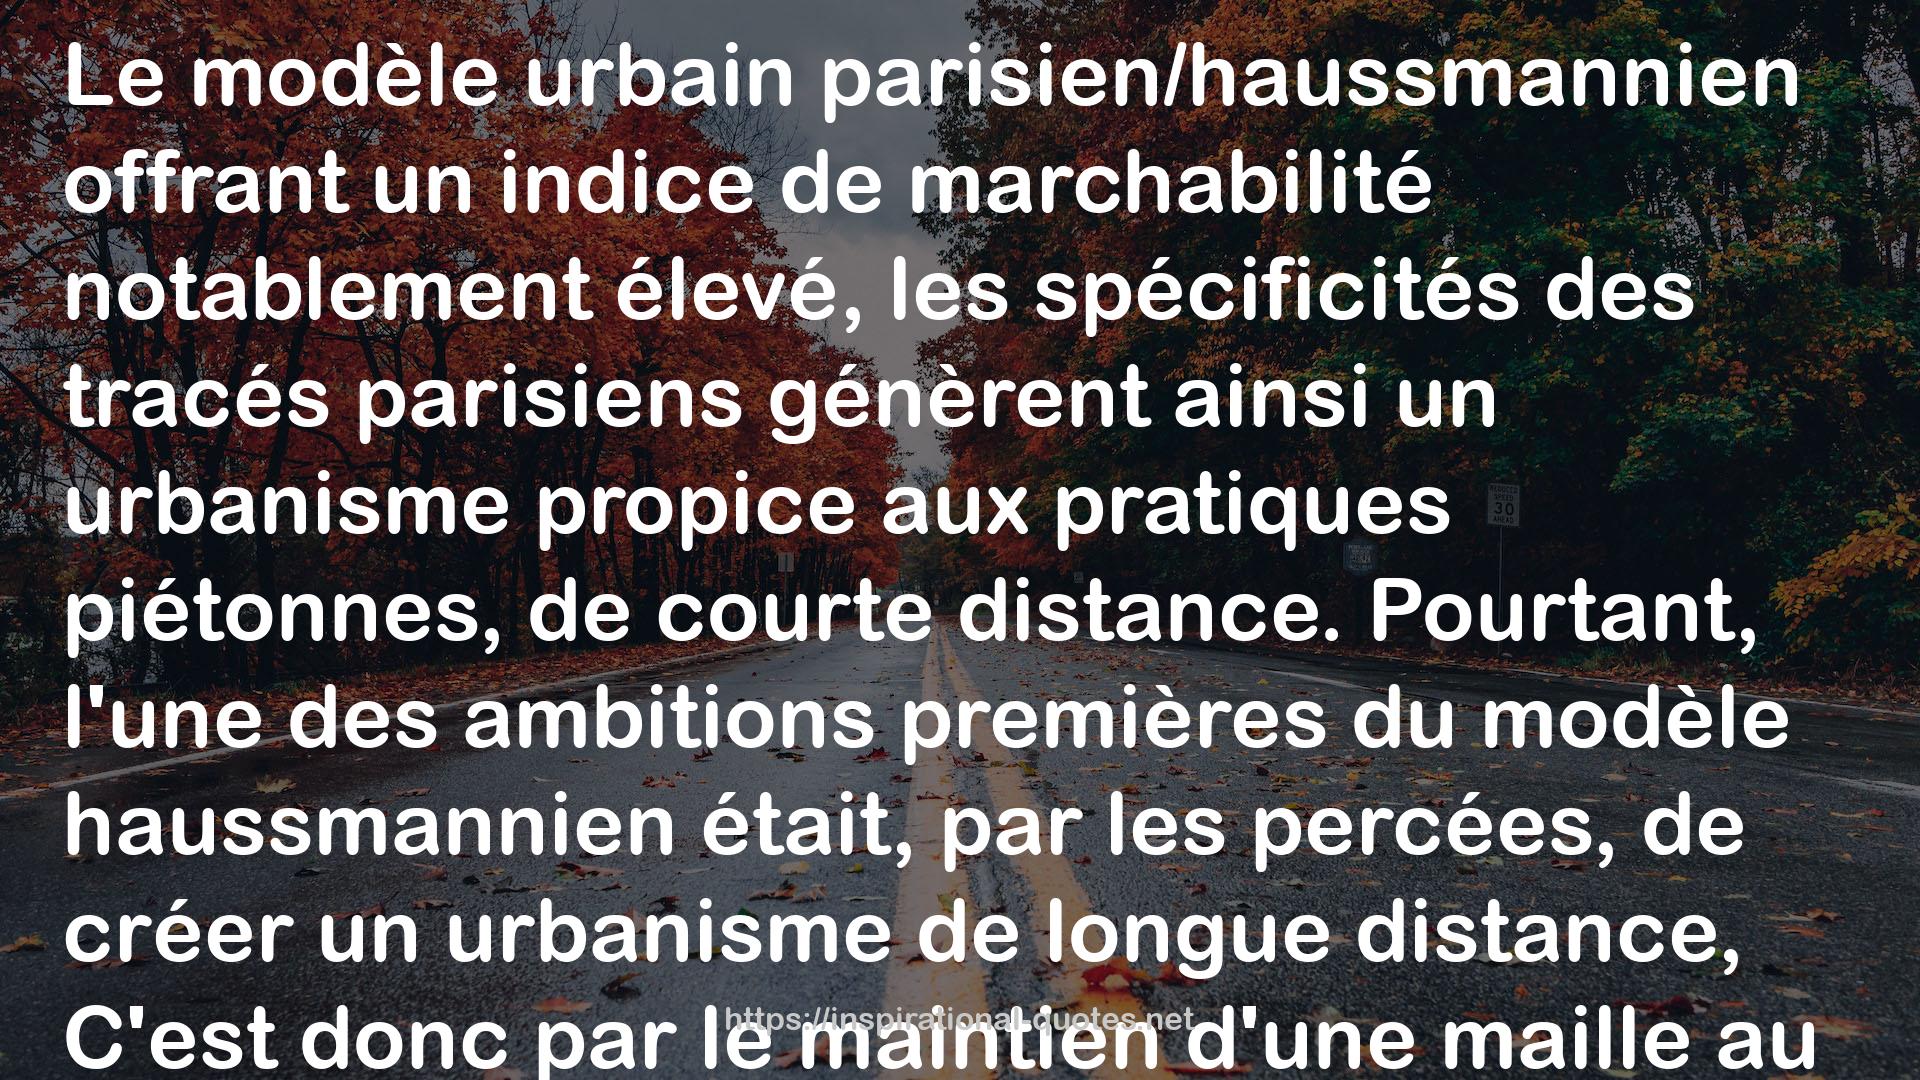 Paris Haussmann: A Model's Relevance QUOTES